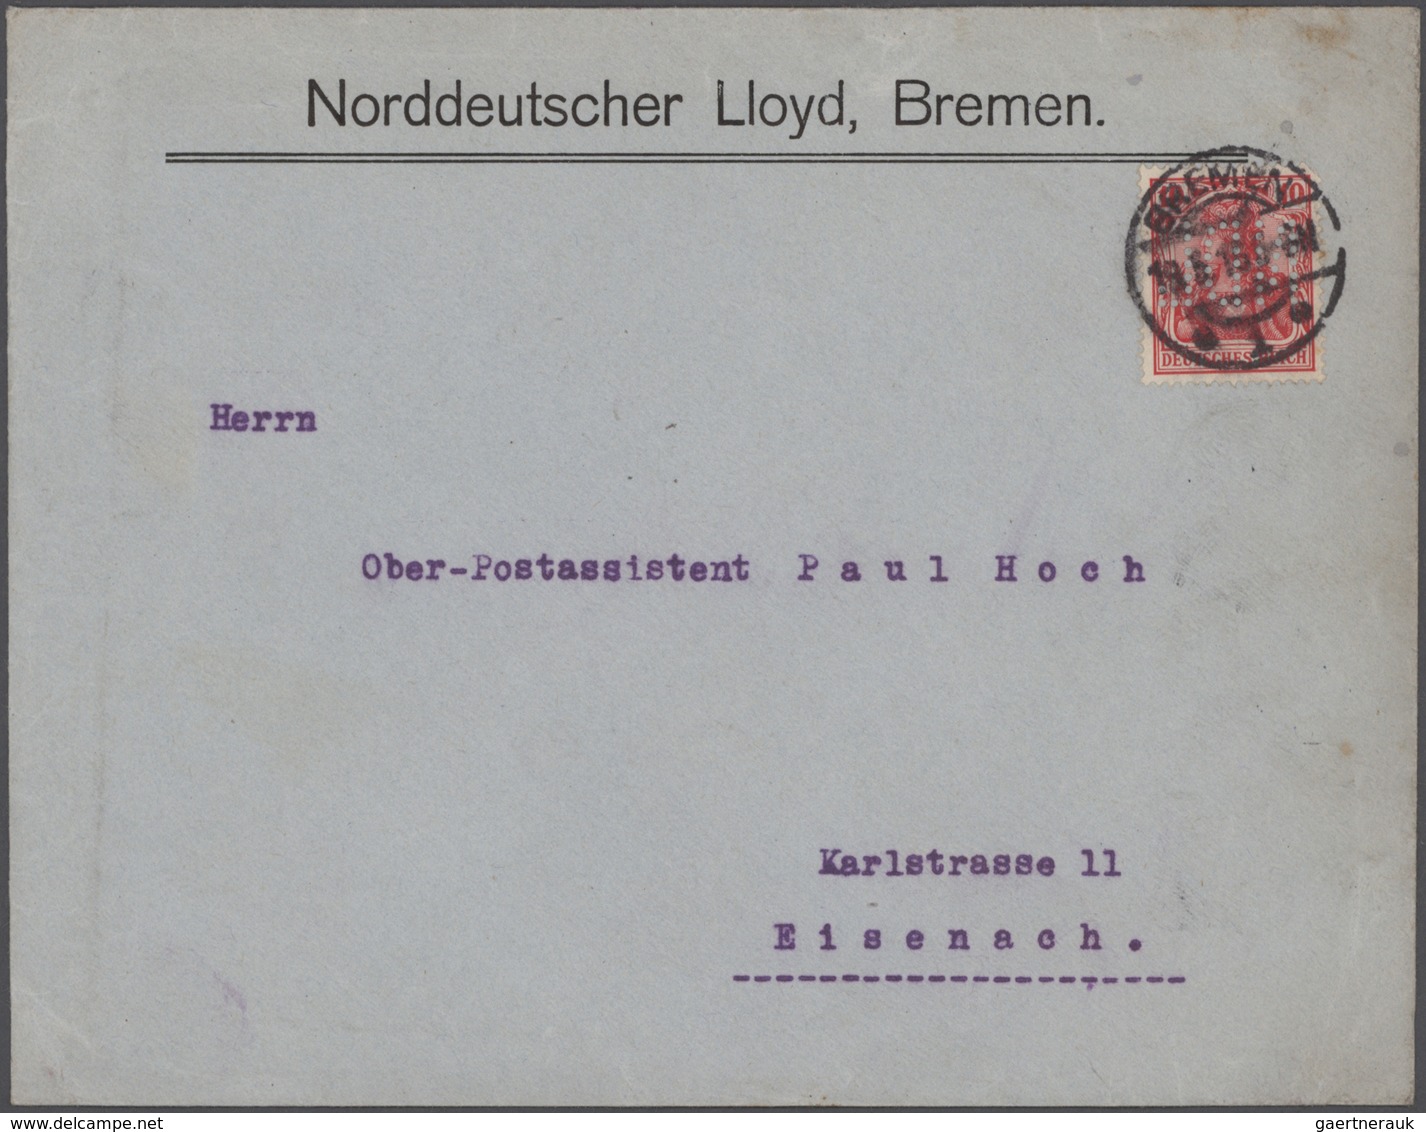 Heimat: Bremen: 1810/1990 (ca.), allumfassende Stempel-Spezial-Sammlung mit insgesamt ca. 1.200 Brie